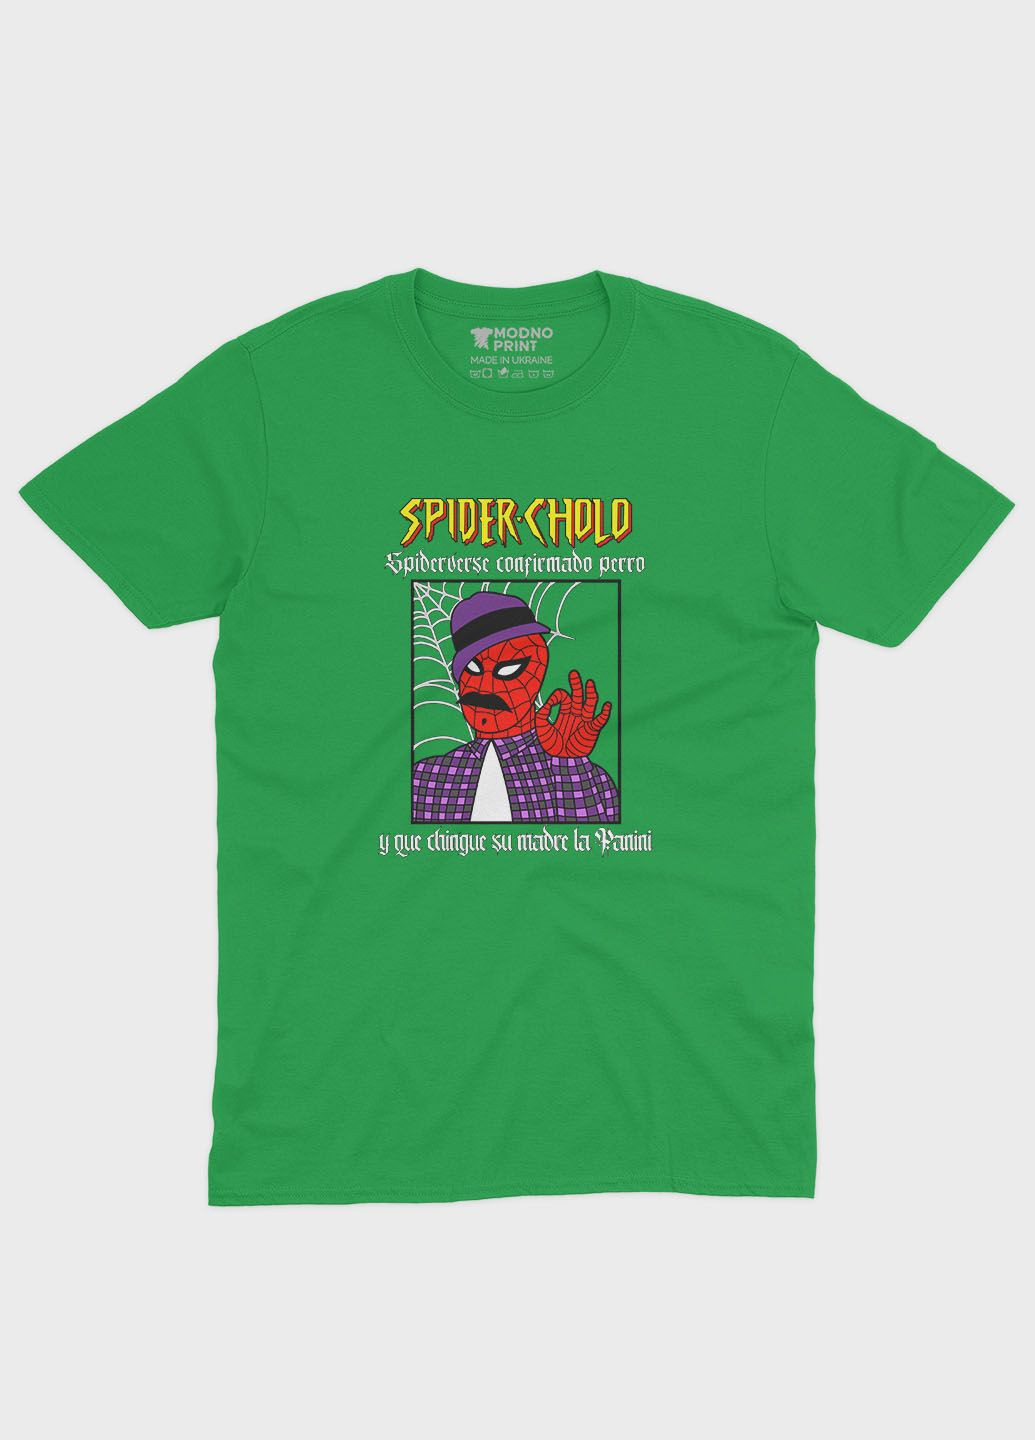 Зелена демісезонна футболка для хлопчика з принтом супергероя - людина-павук (ts001-1-keg-006-014-099-b) Modno